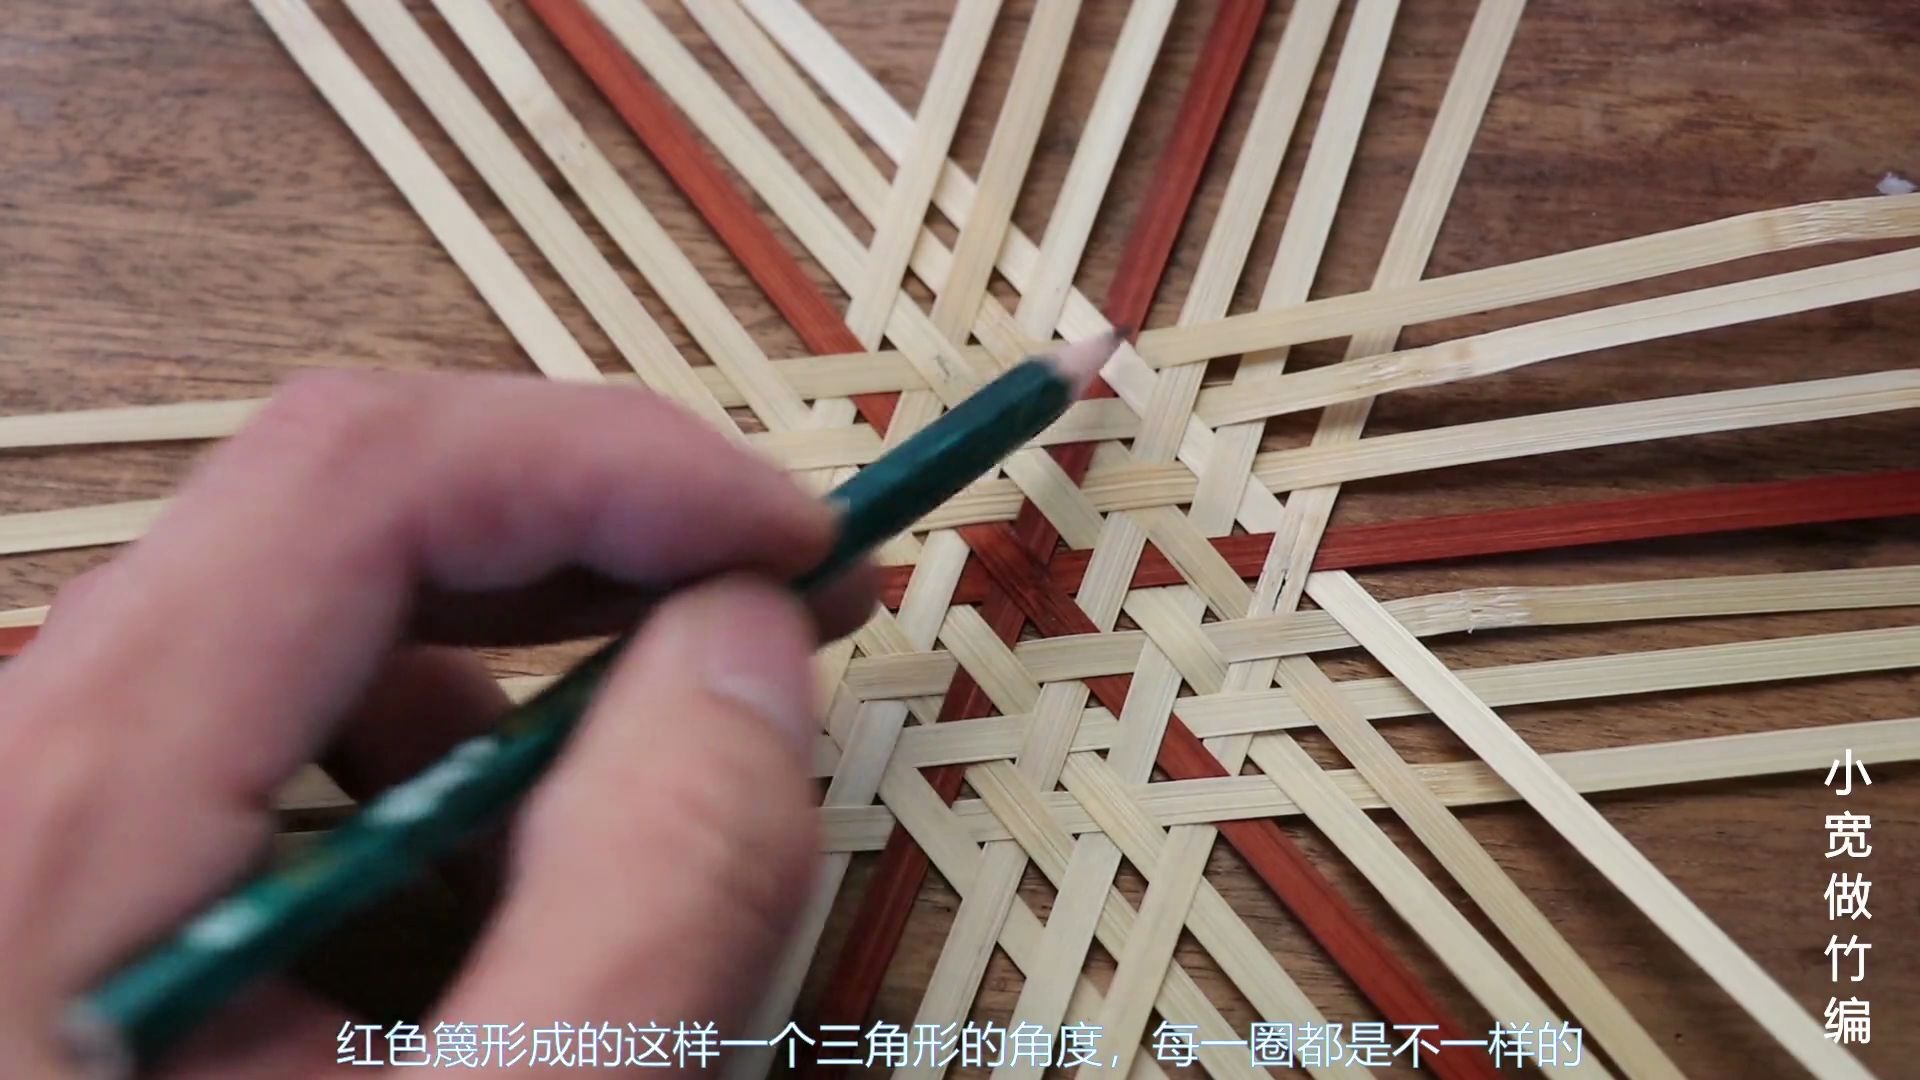 传统竹编技法之三角眼编织常用于竹篮底部得起底纹样